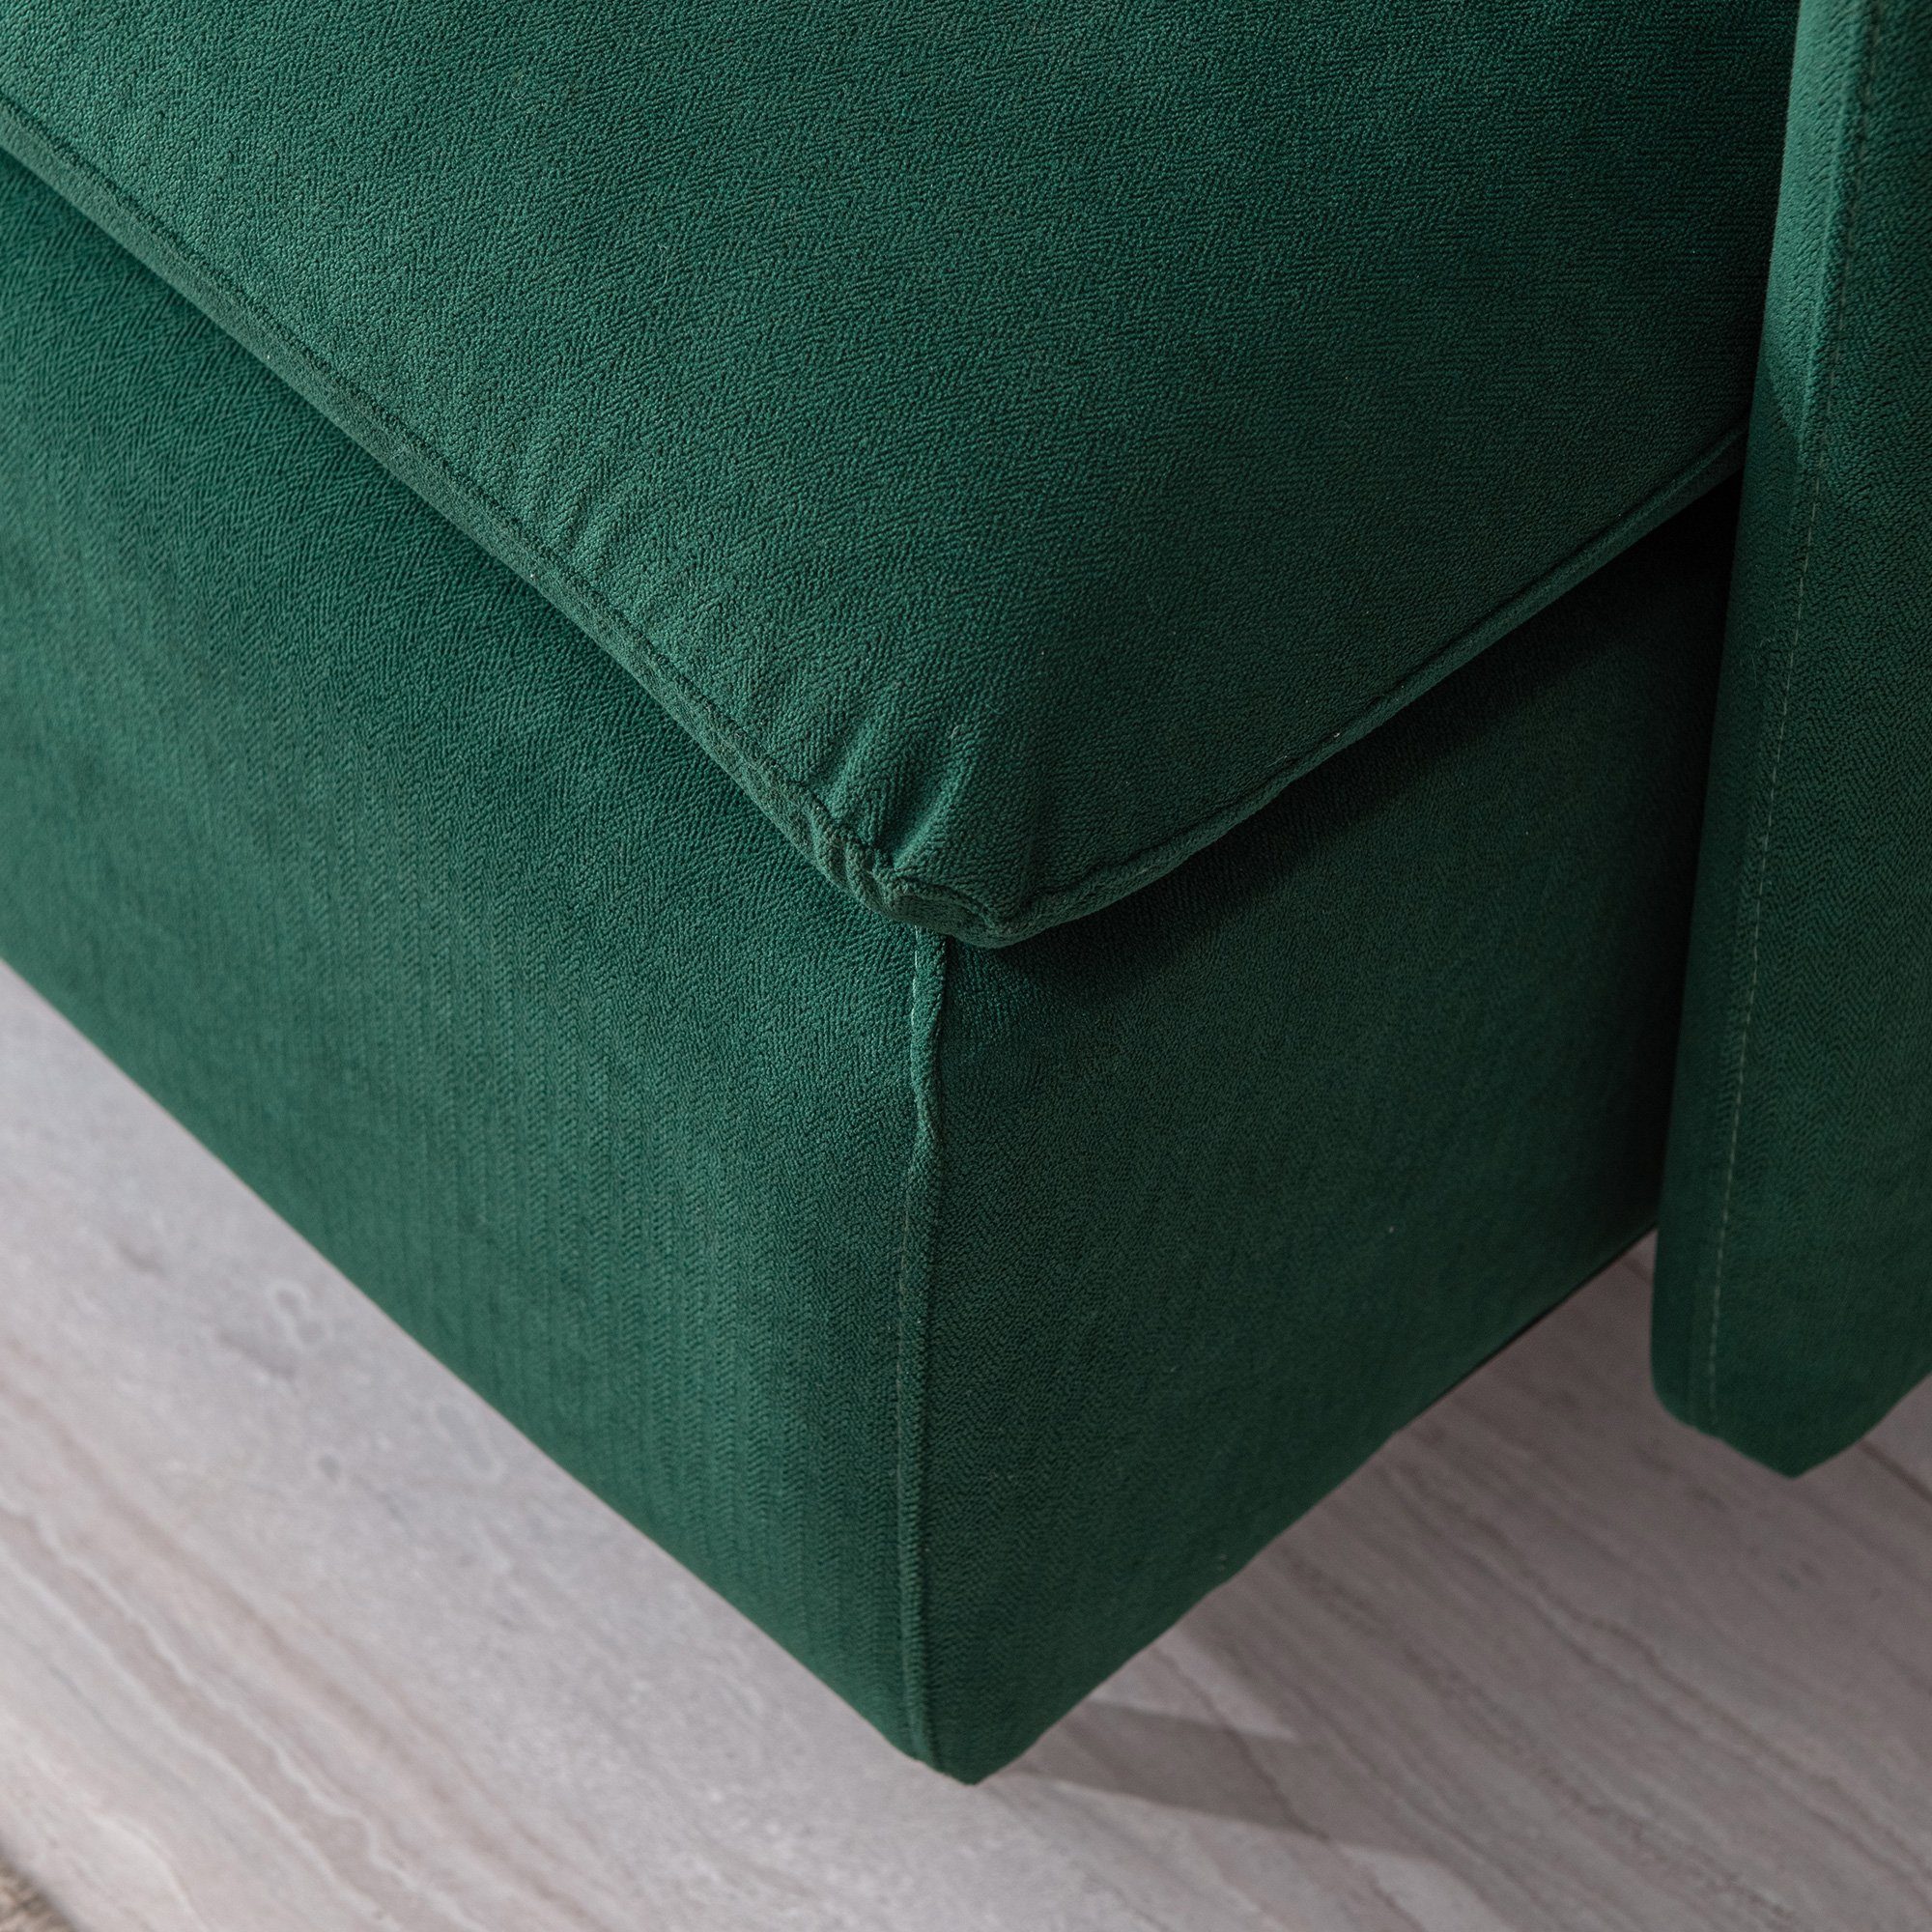 Modern Grün mehrere gepolsterter Sessel, Farbe Einzelsofa Sofa Odikalo Baumwollleinen,